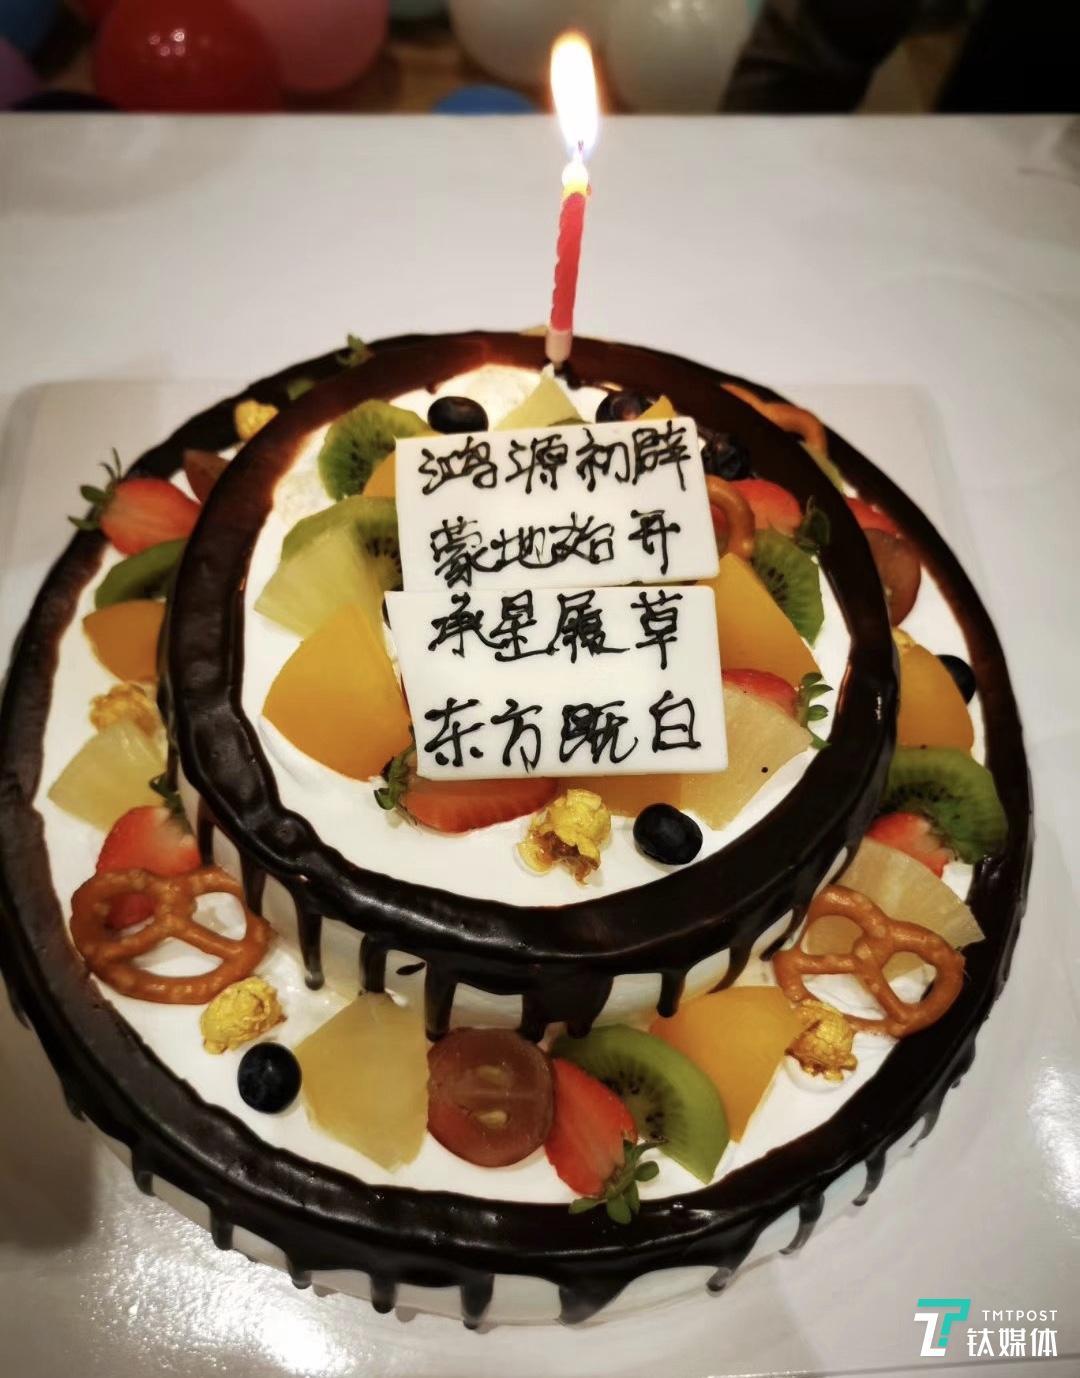 余承东发朋友圈庆祝50岁生日 与鸿蒙OS发布同一天